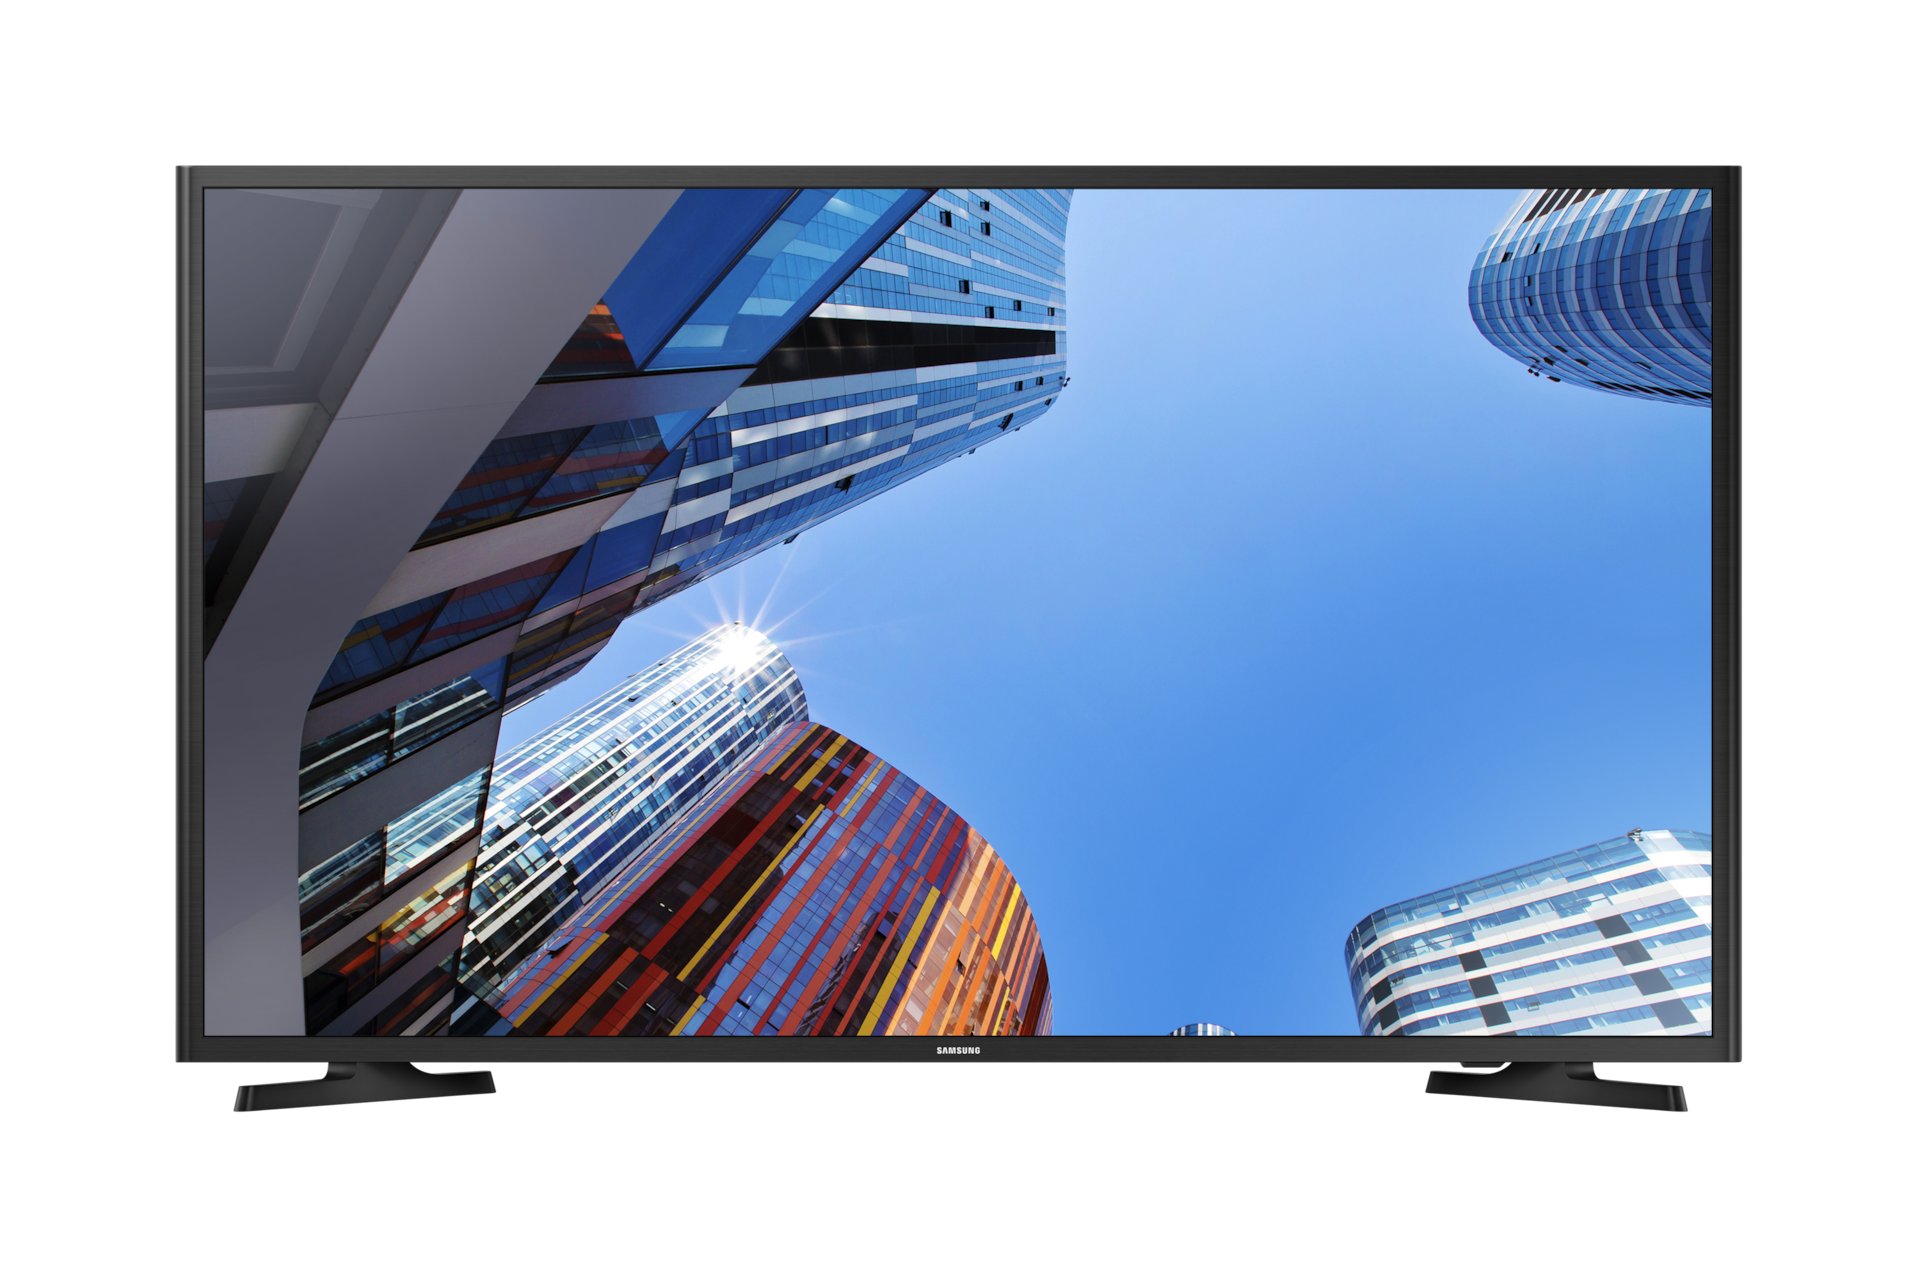 Televisor Samsung 40 Pulgadas Full Hd Excelente Estado - Comprá en